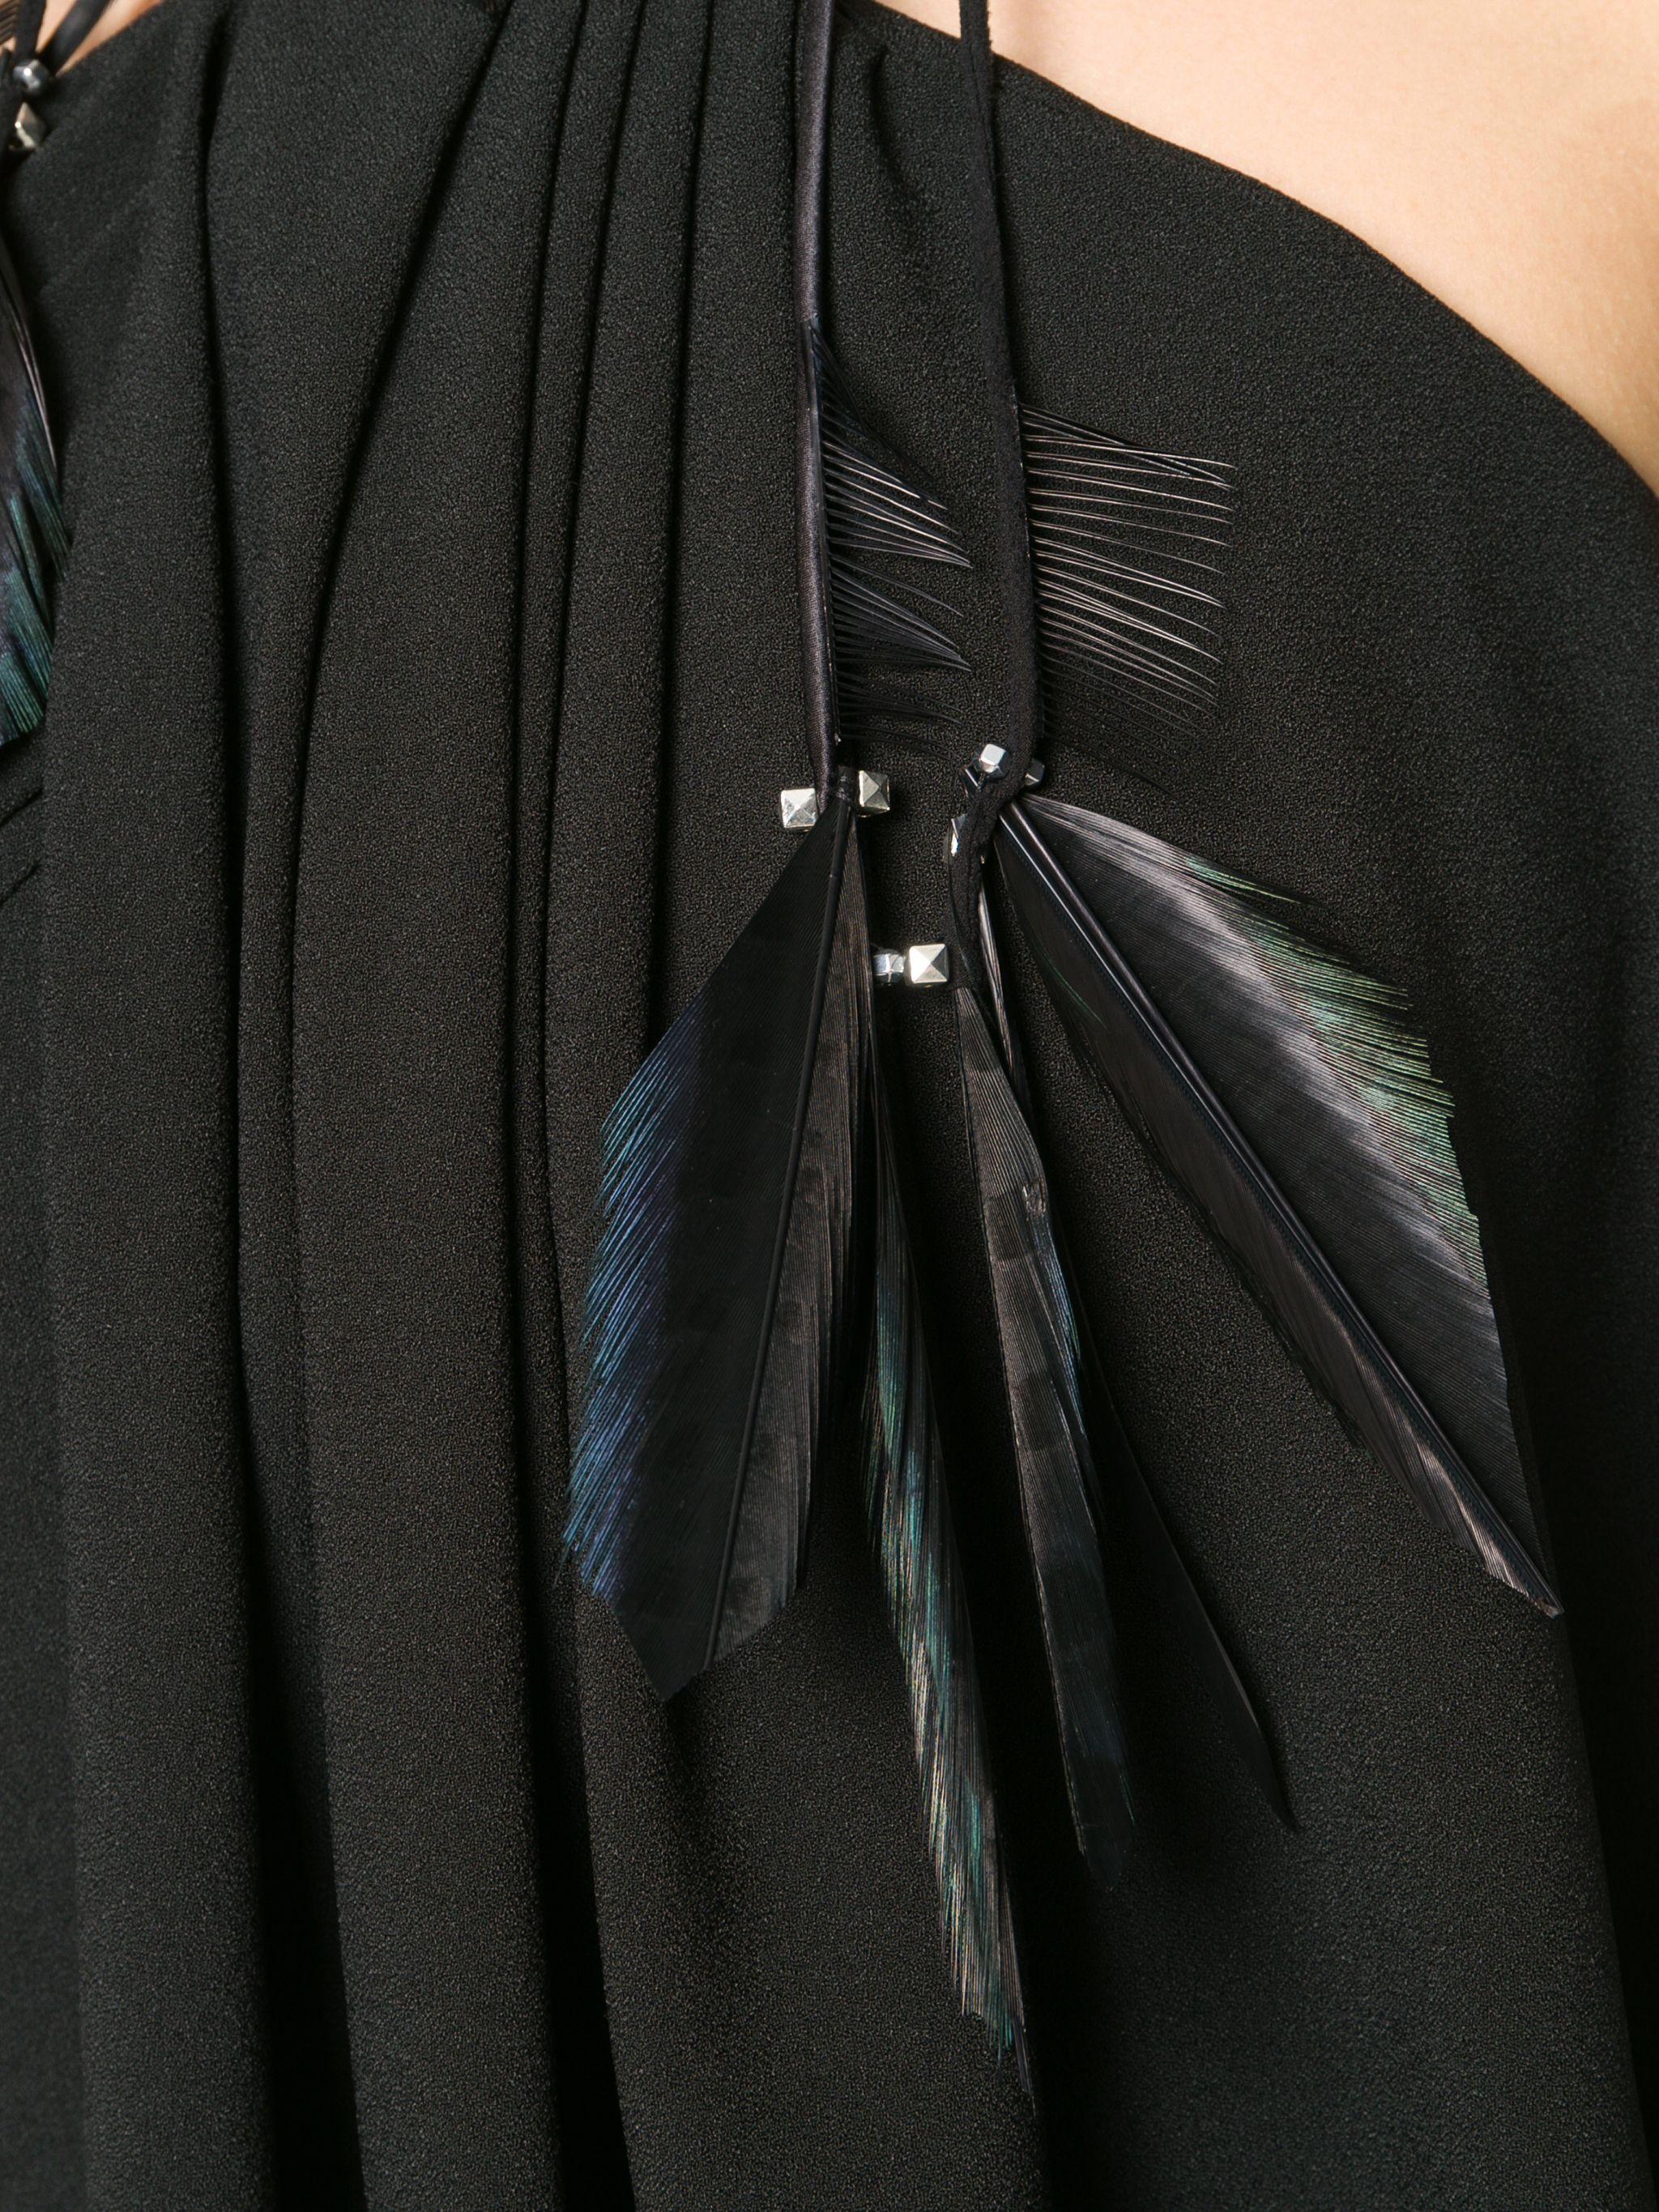 Women's Saint Laurent Black Mini Halter Silk Crepe Dress Size 40 For Sale